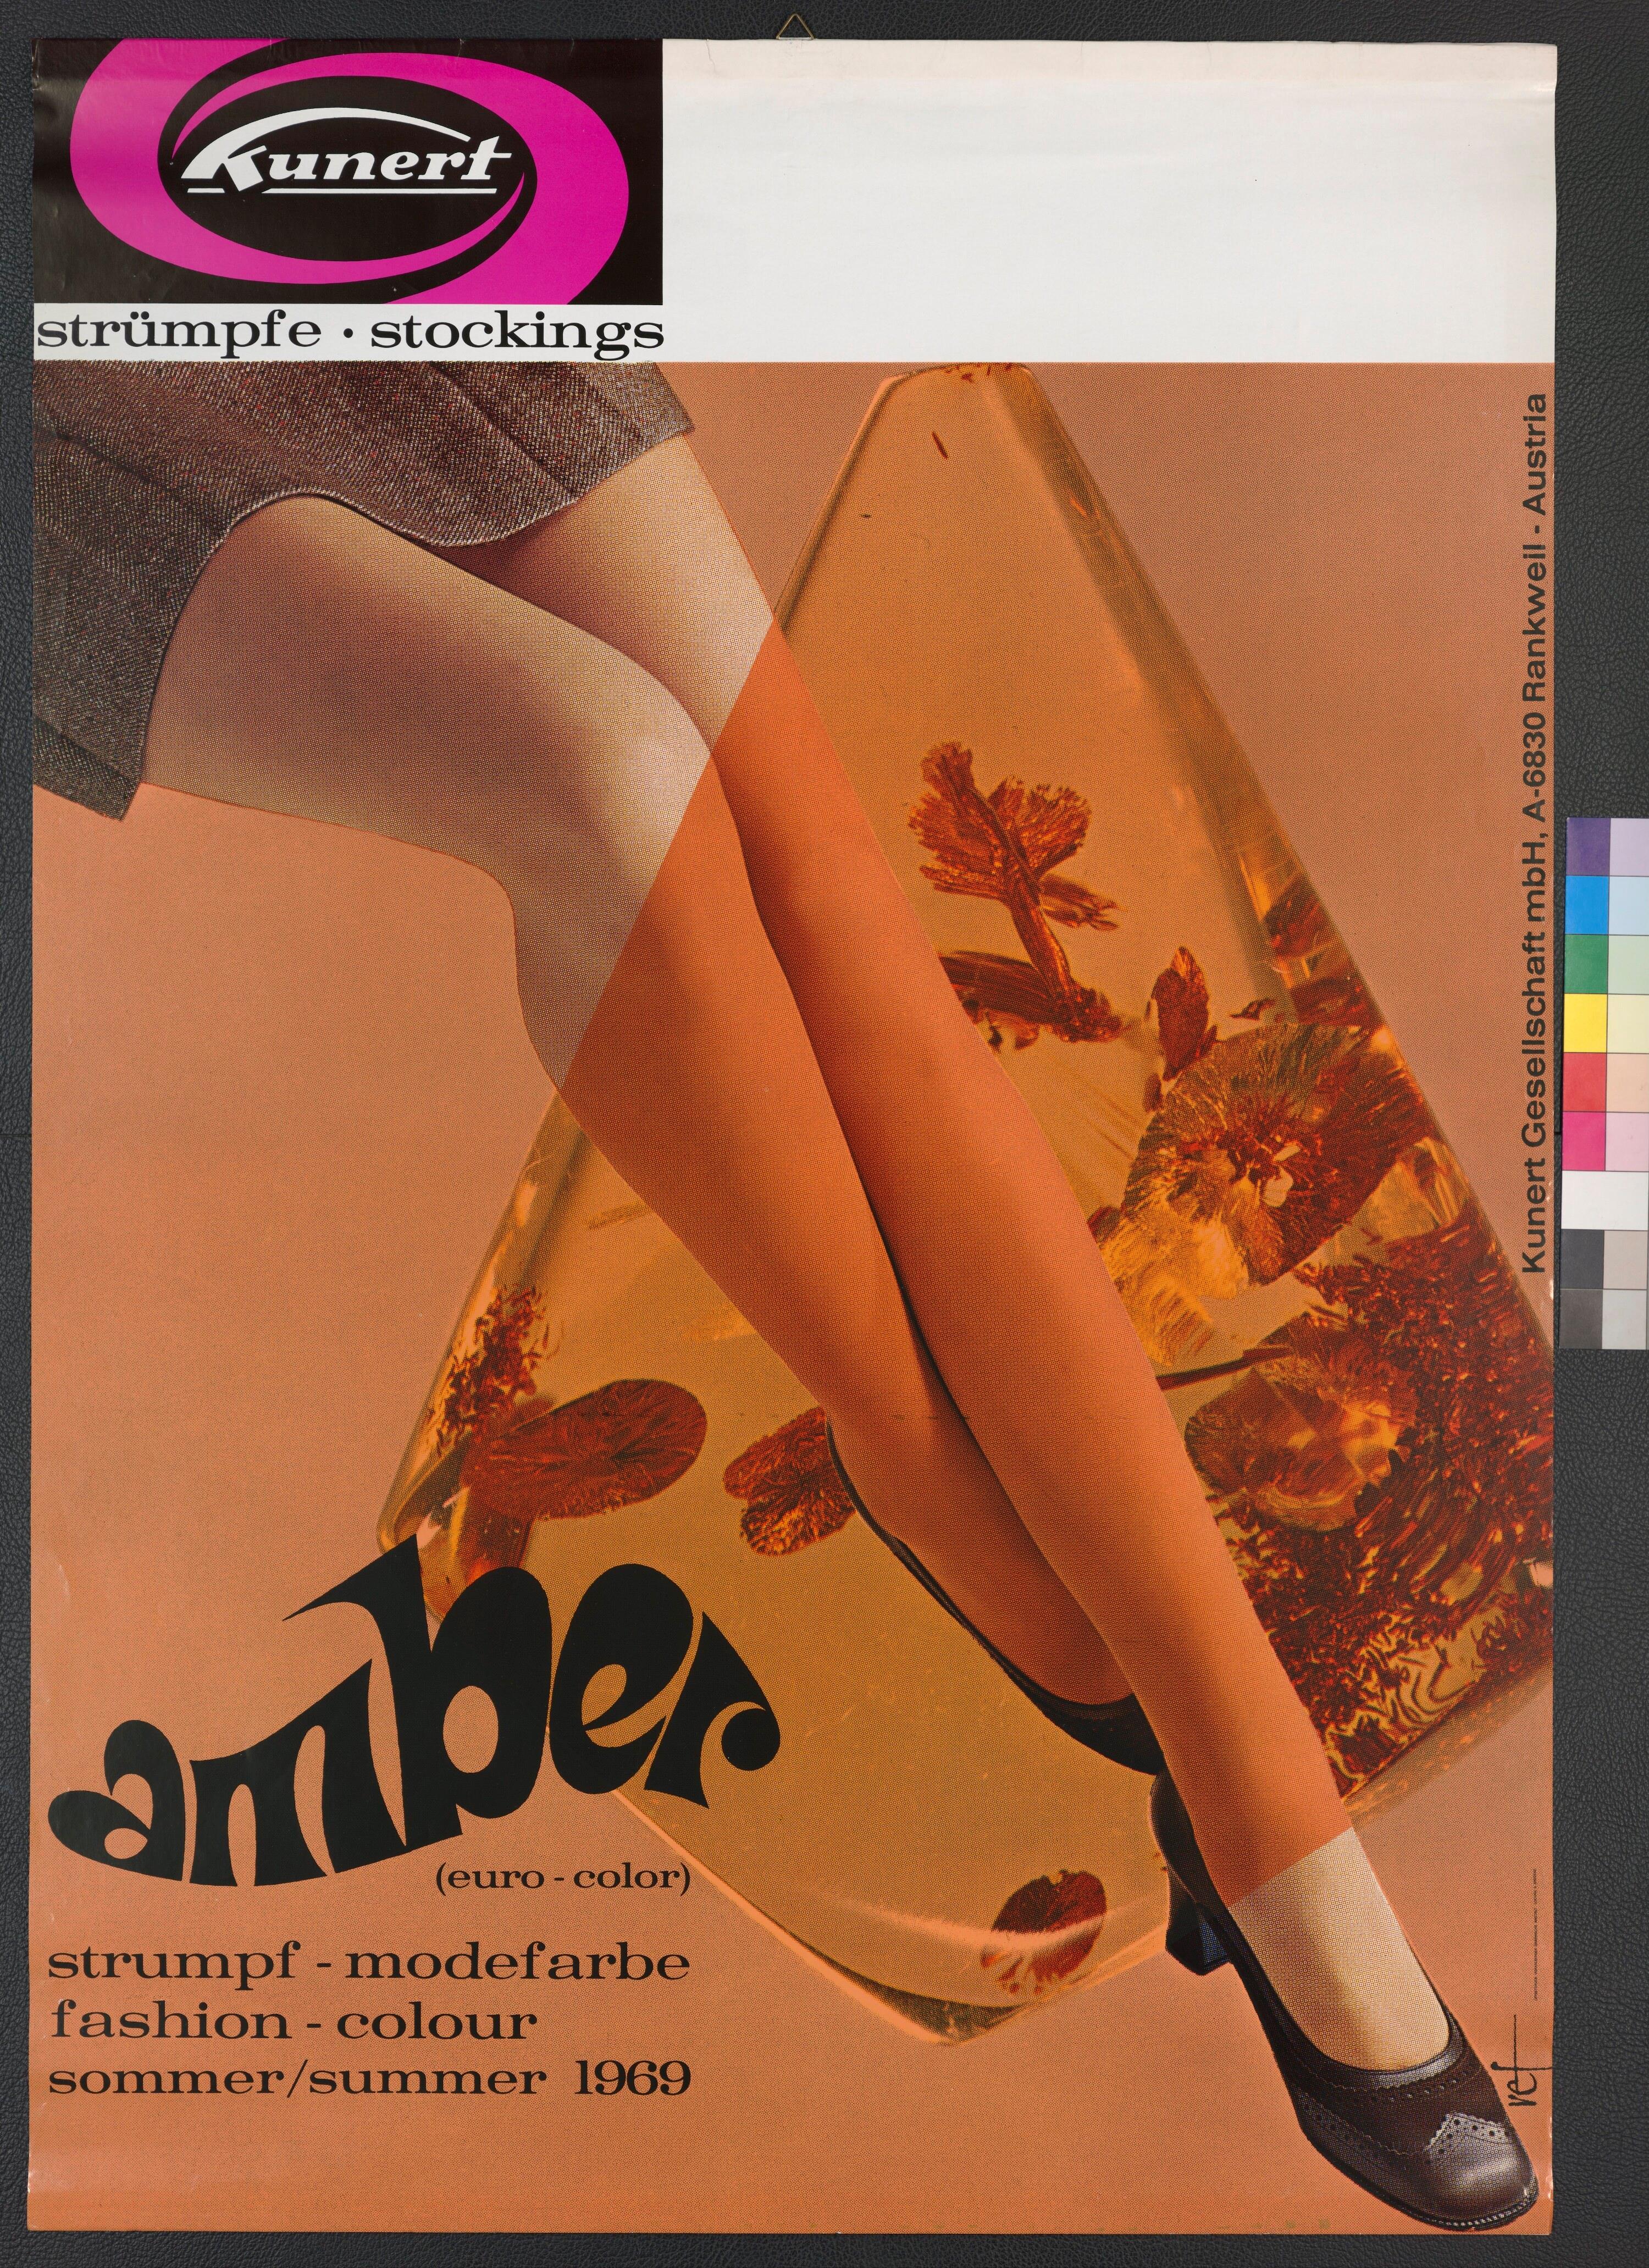 Werbeplakat des Textilunternehmens Kunert, Rankweil></div>


    <hr>
    <div class=